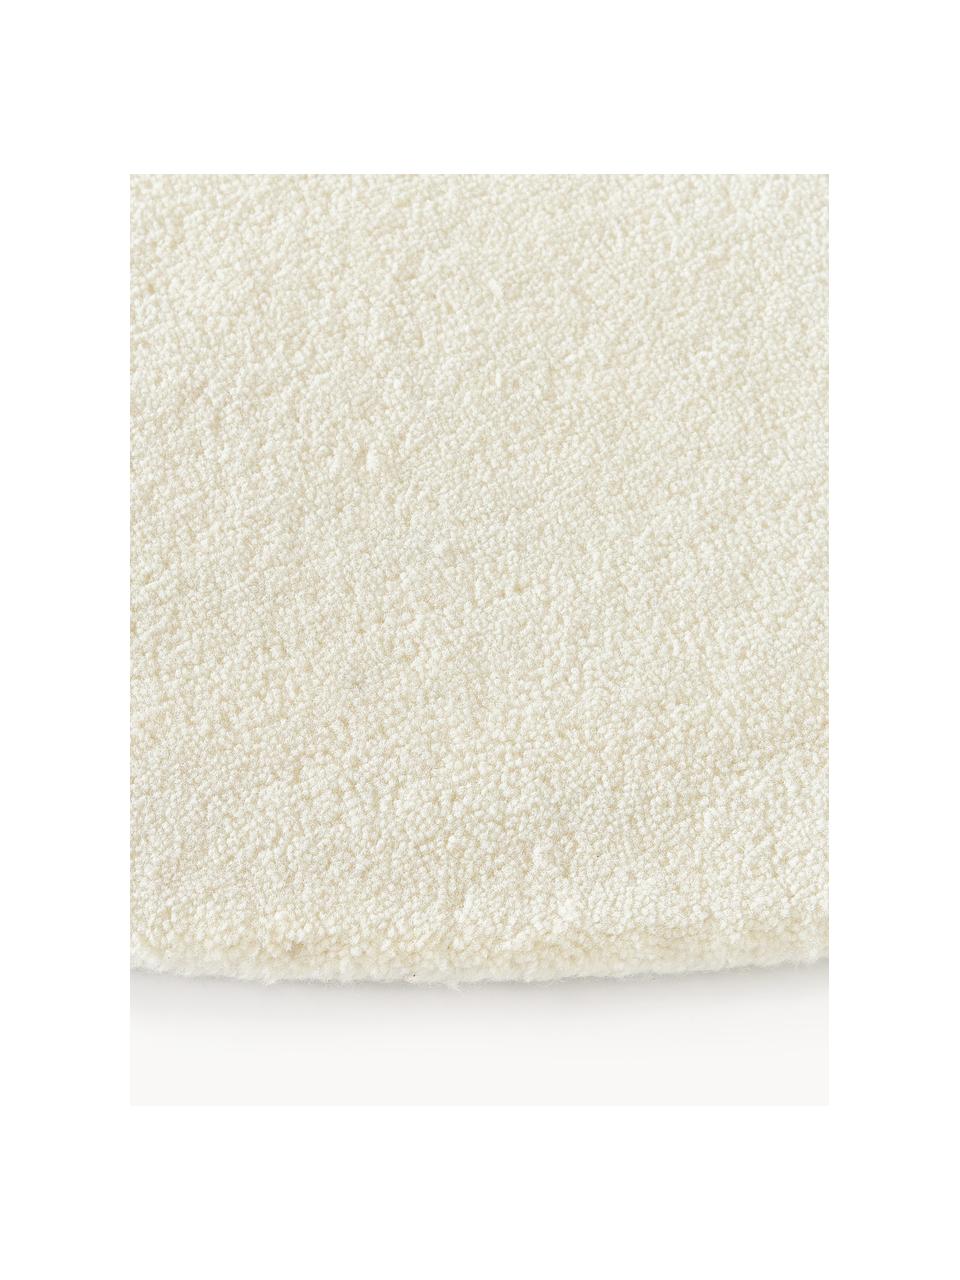 Tappeto rotondo in lana a pelo corto fatto a mano Jadie, Retro: 70% cotone, 30% poliester, Bianco crema, Ø 250 cm (taglia XL)